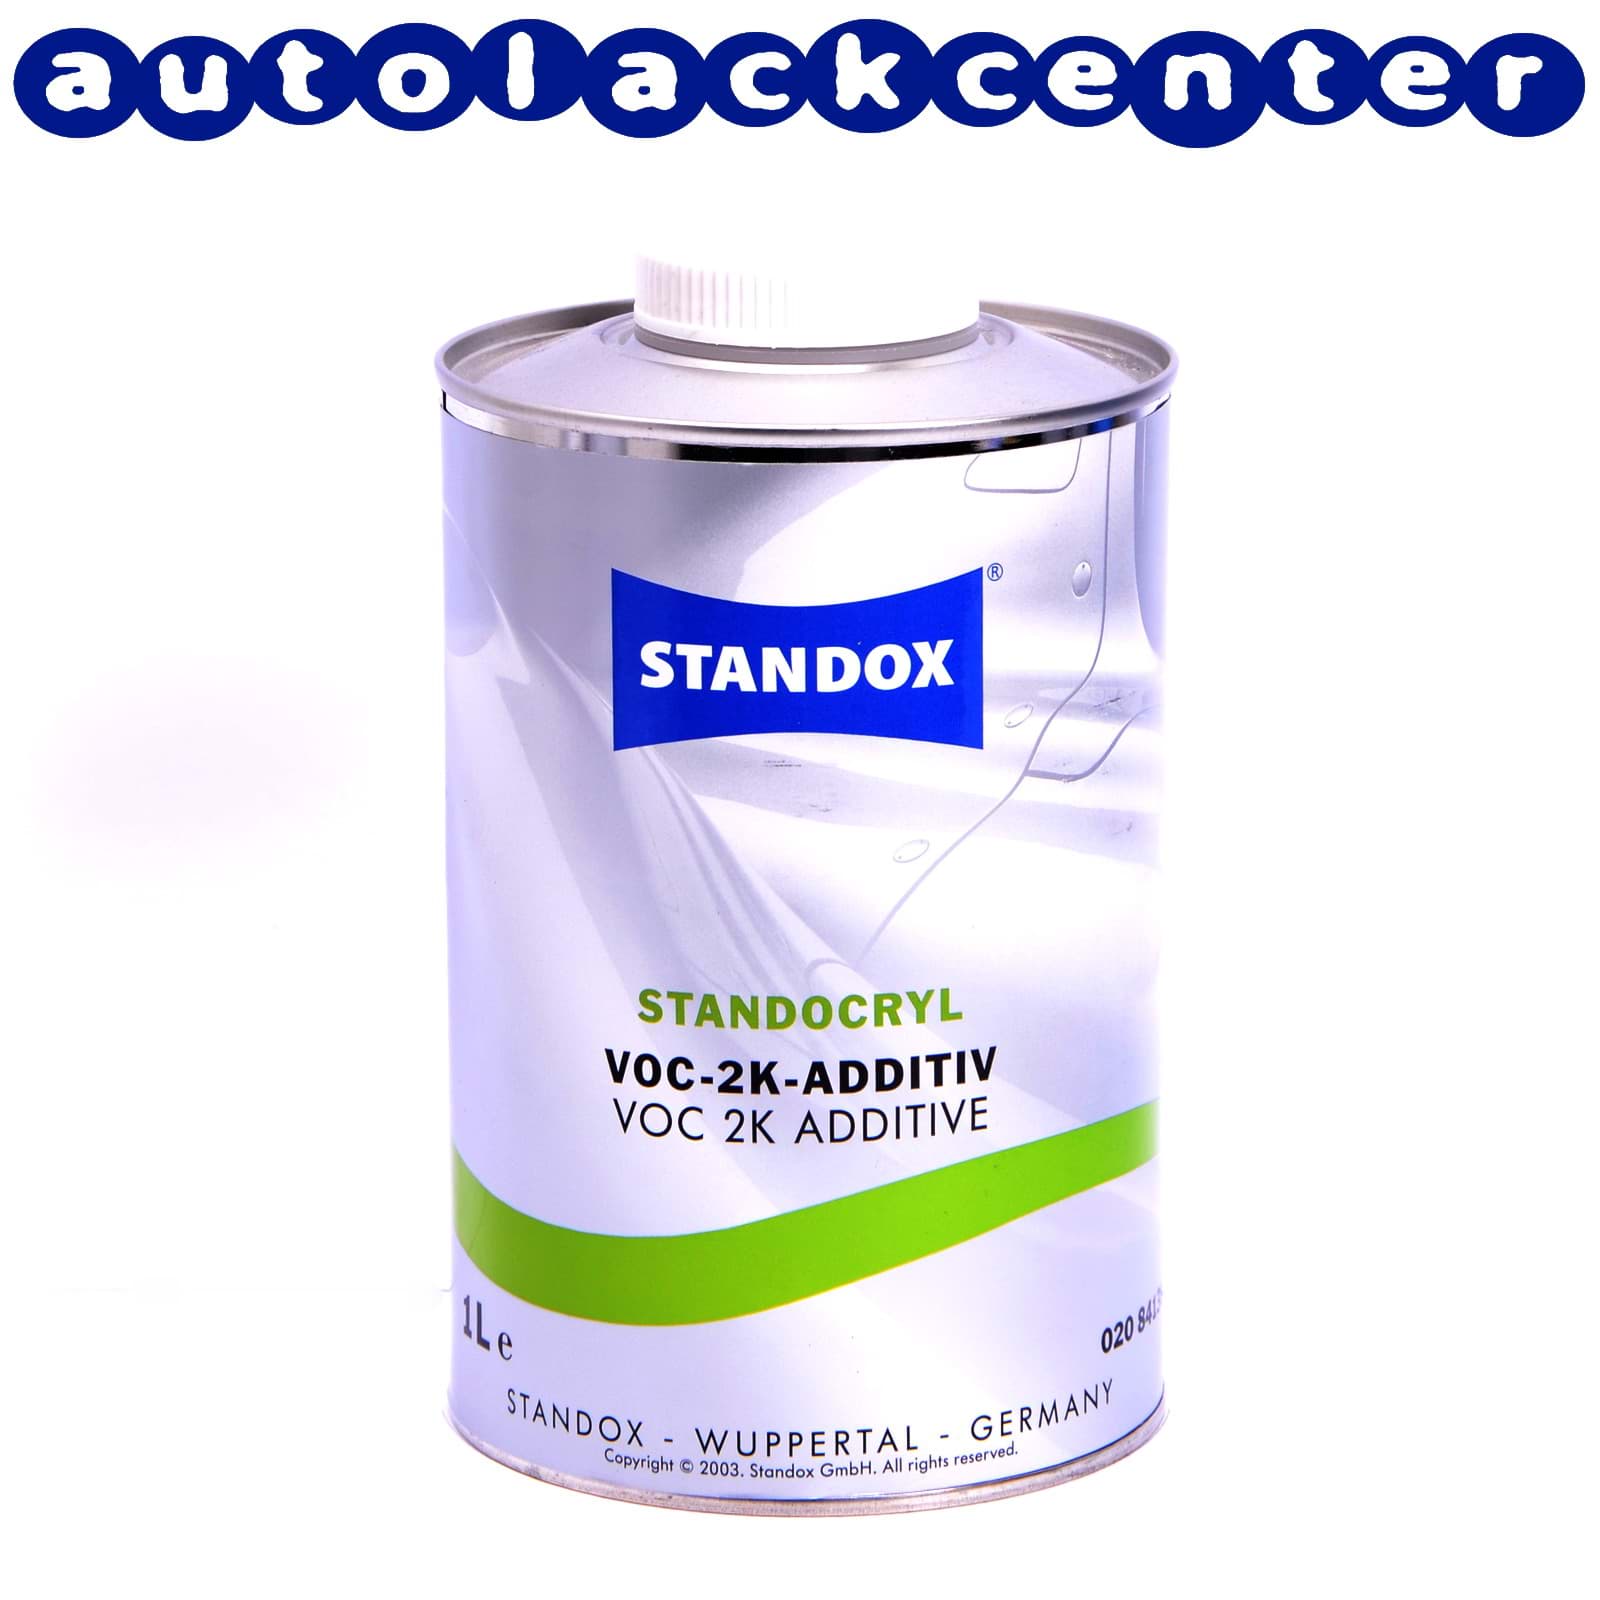 Afbeelding van Standox Standocryl VOC-2K-Additiv 1Liter